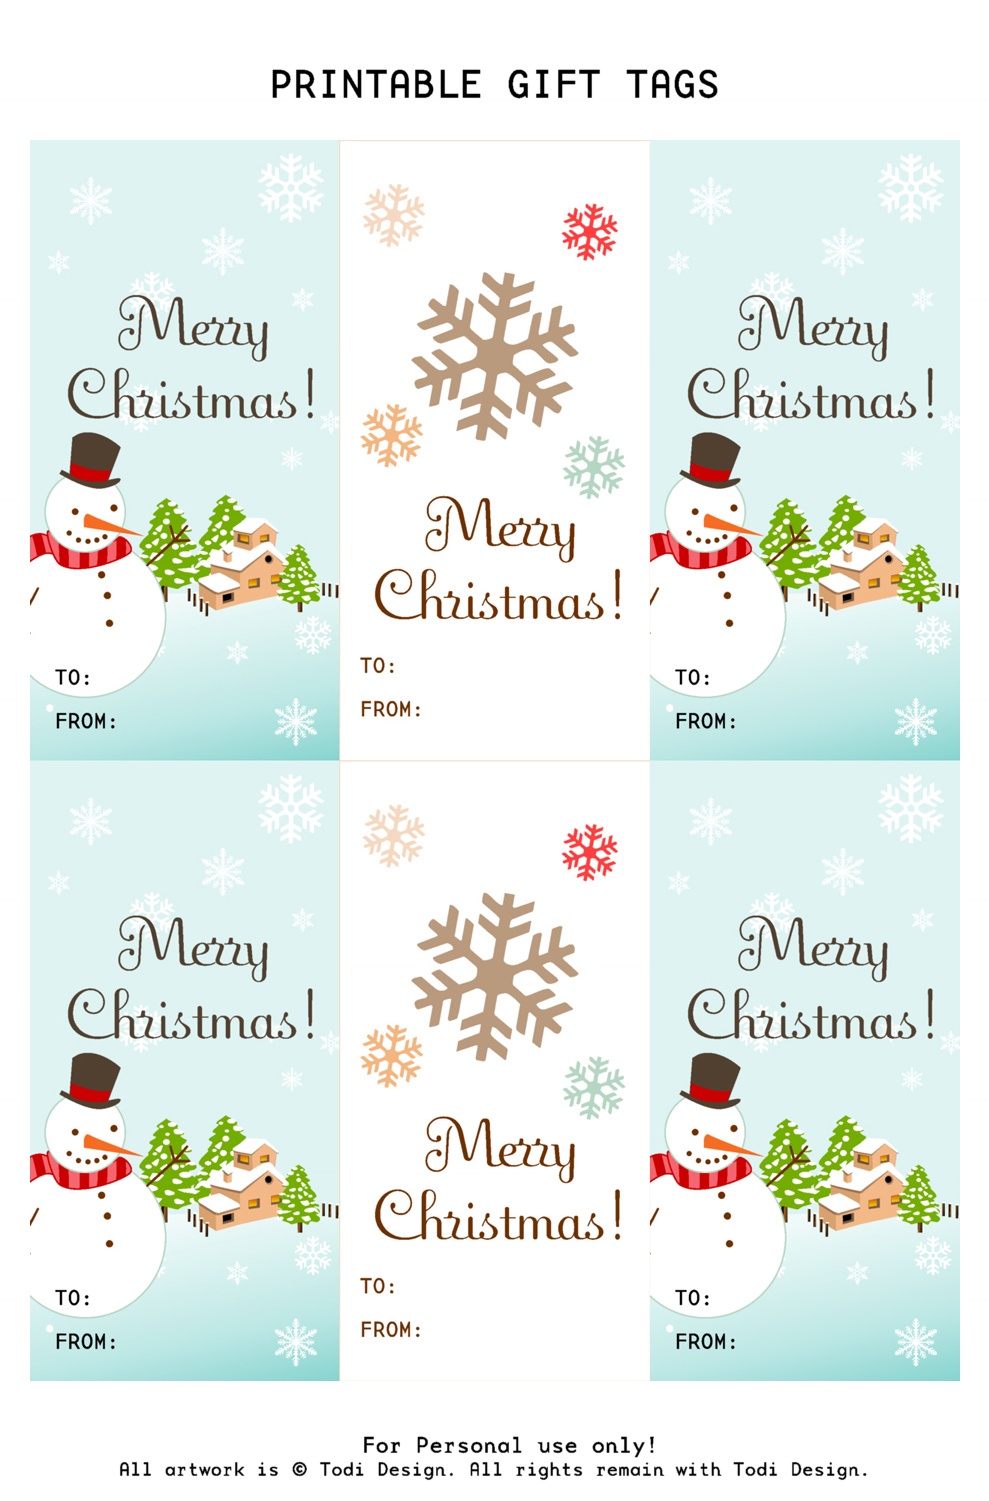 Todi: Spirit Of Christmas - Free Printable Gift Tags For Holiday Gifts - Free Printable Christmas Designs